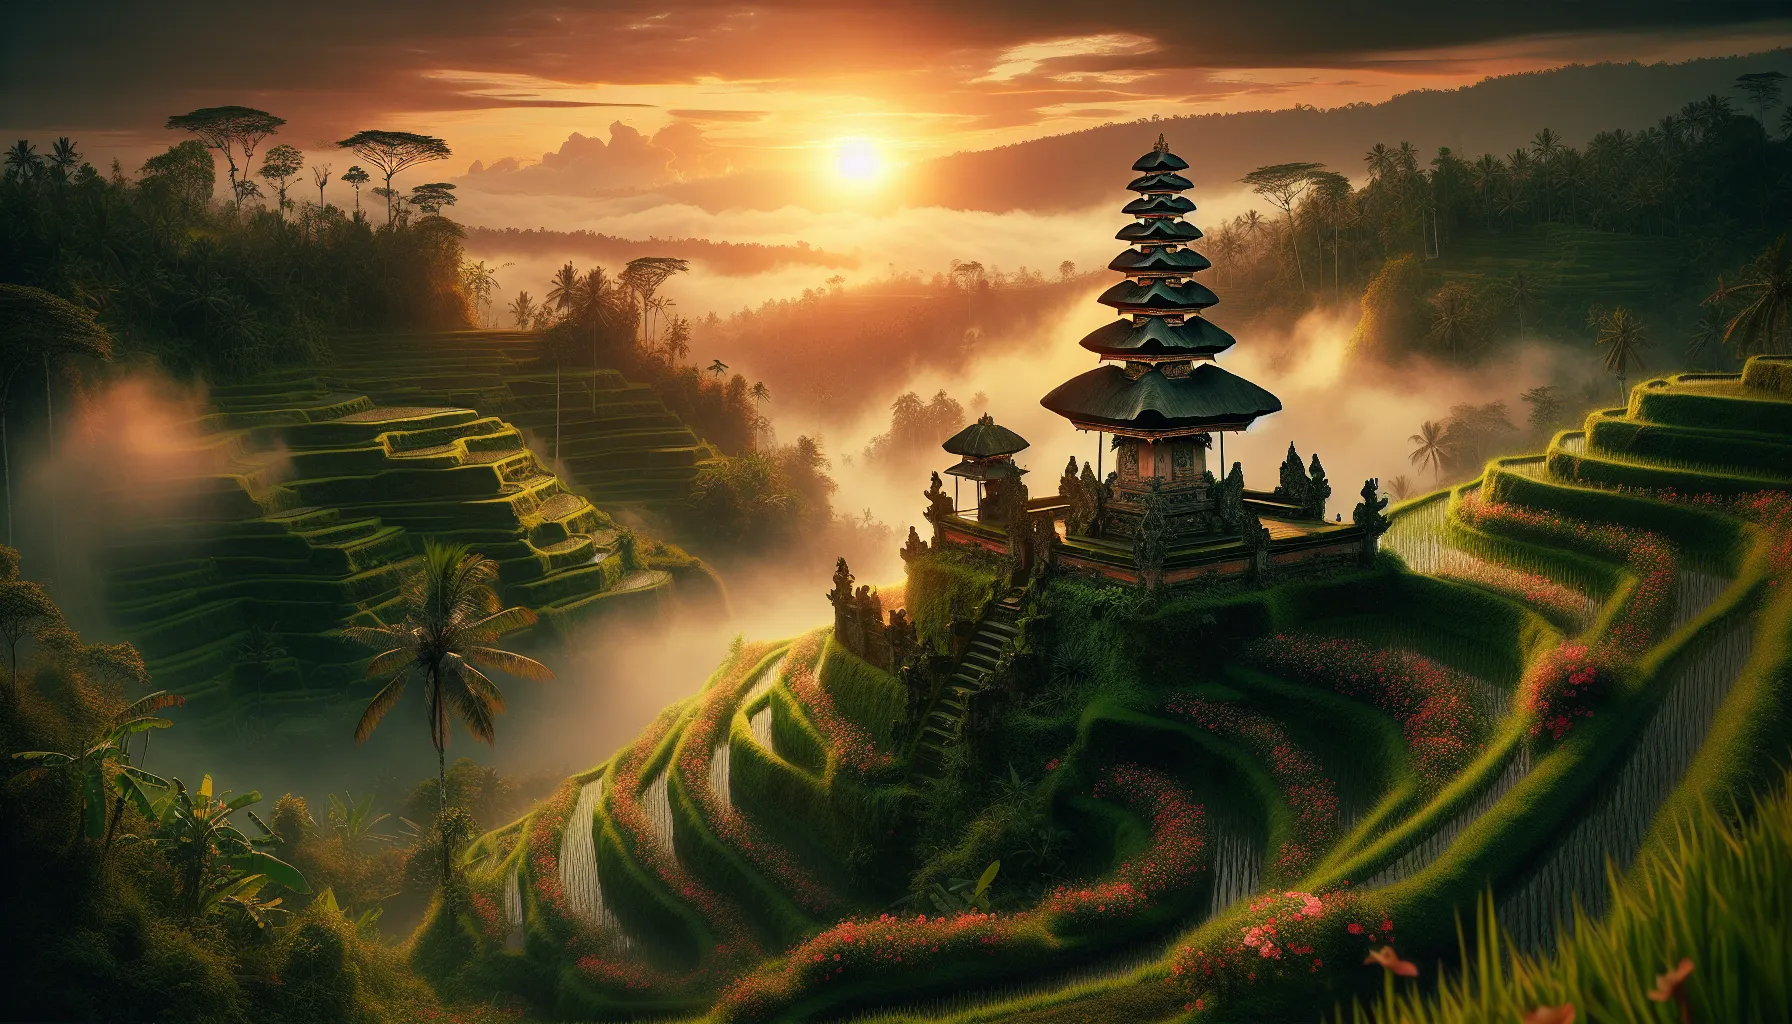 A Ilha dos Deuses: Descubra os Segredos Mais Profundos de Bali em 3 Dias Mágicos